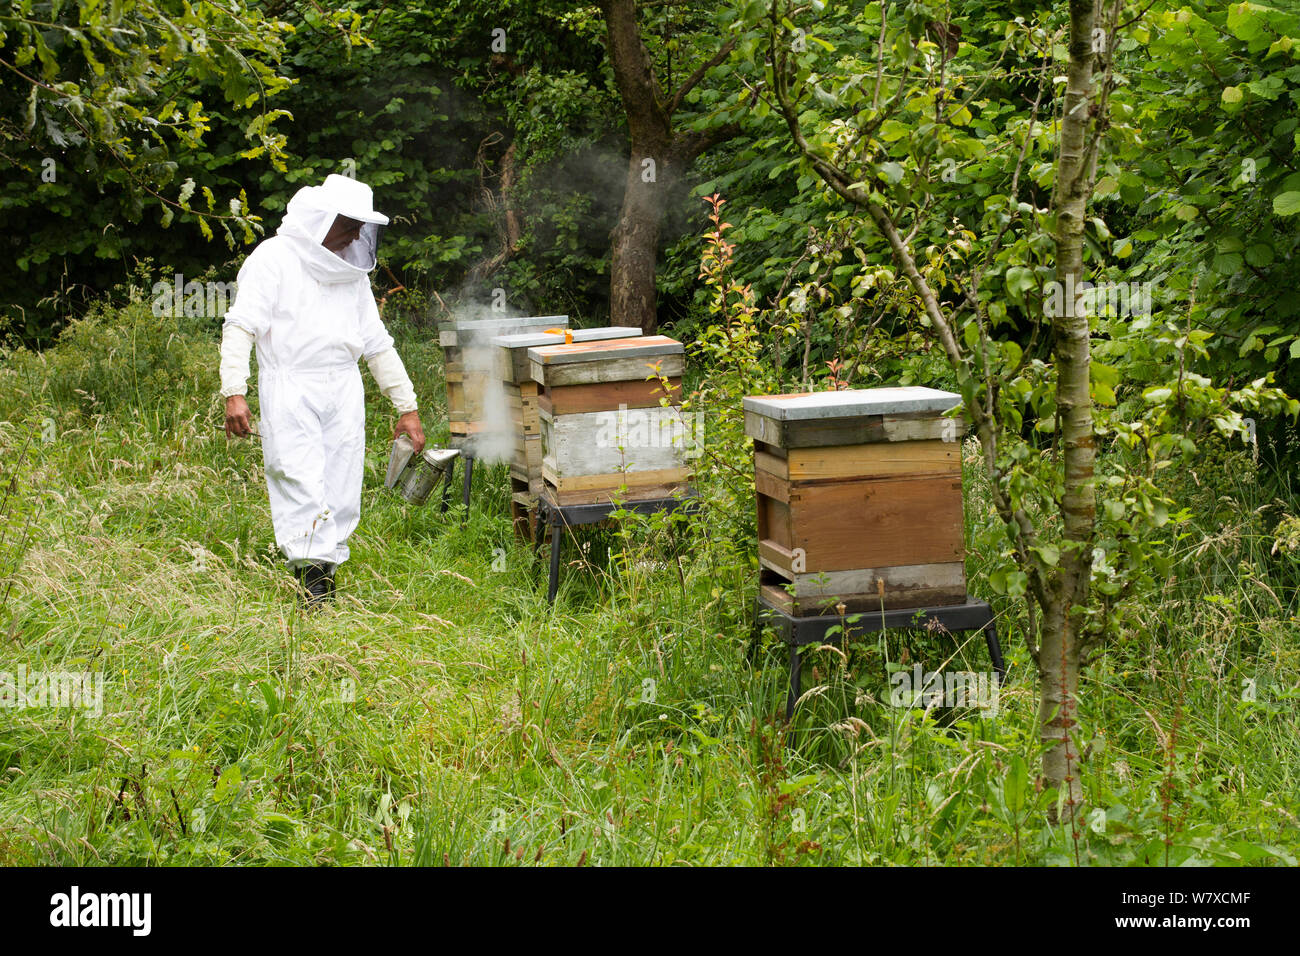 Russell Flynn, de Gwent en portant des apiculteurs apiculture costume, assister à l'abeille (Apis) meliffera ruches dans Old Orchard, Pontypool, Pays de Galles, Royaume-Uni, juillet 2014. Banque D'Images